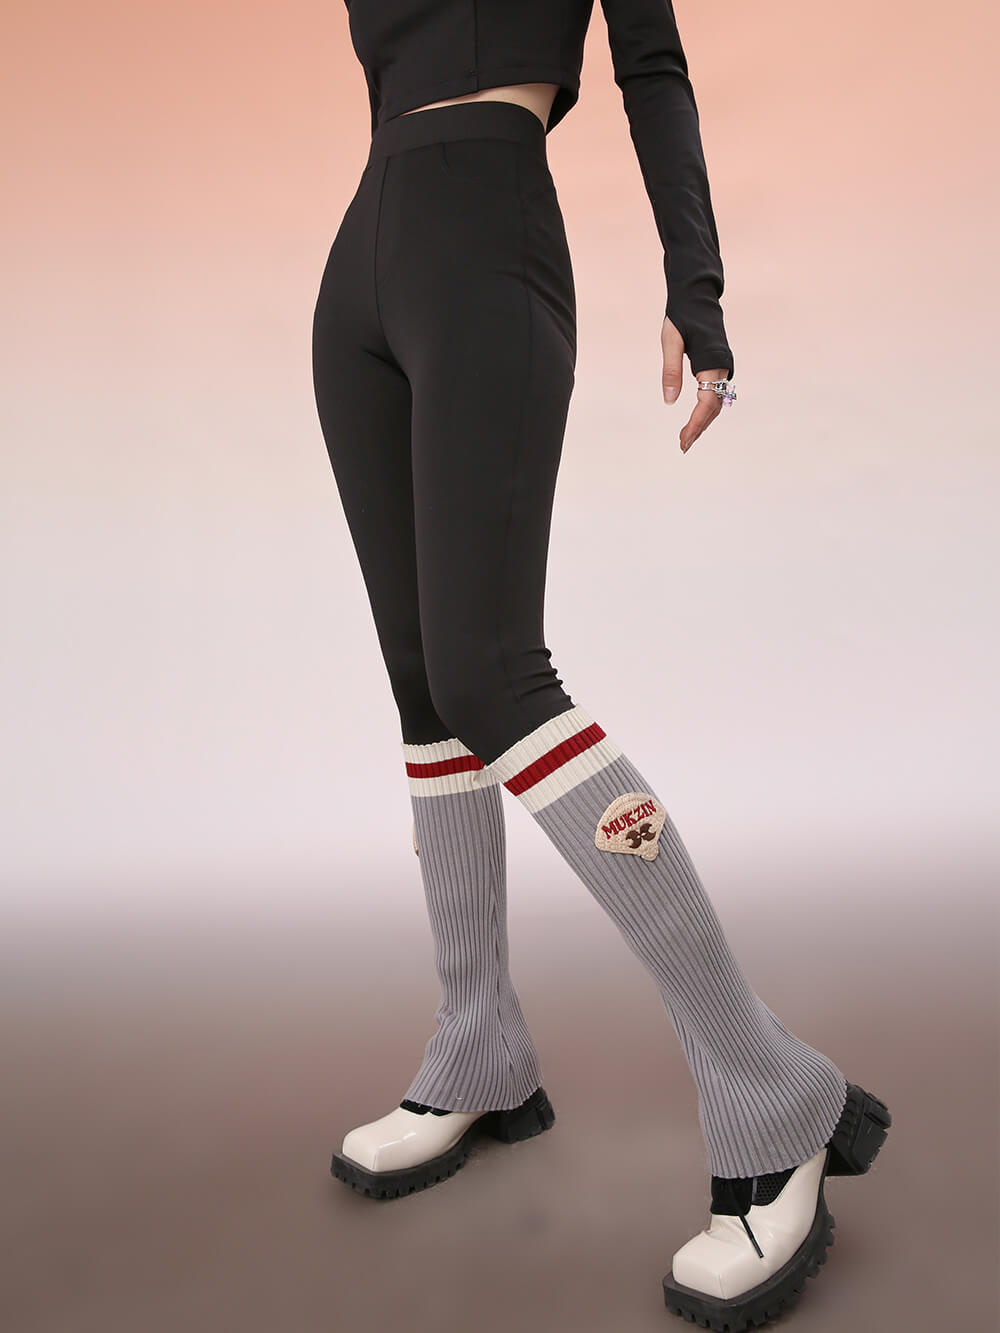 MUKZIN Gray and Red Contrasting Slim Leggings Pants